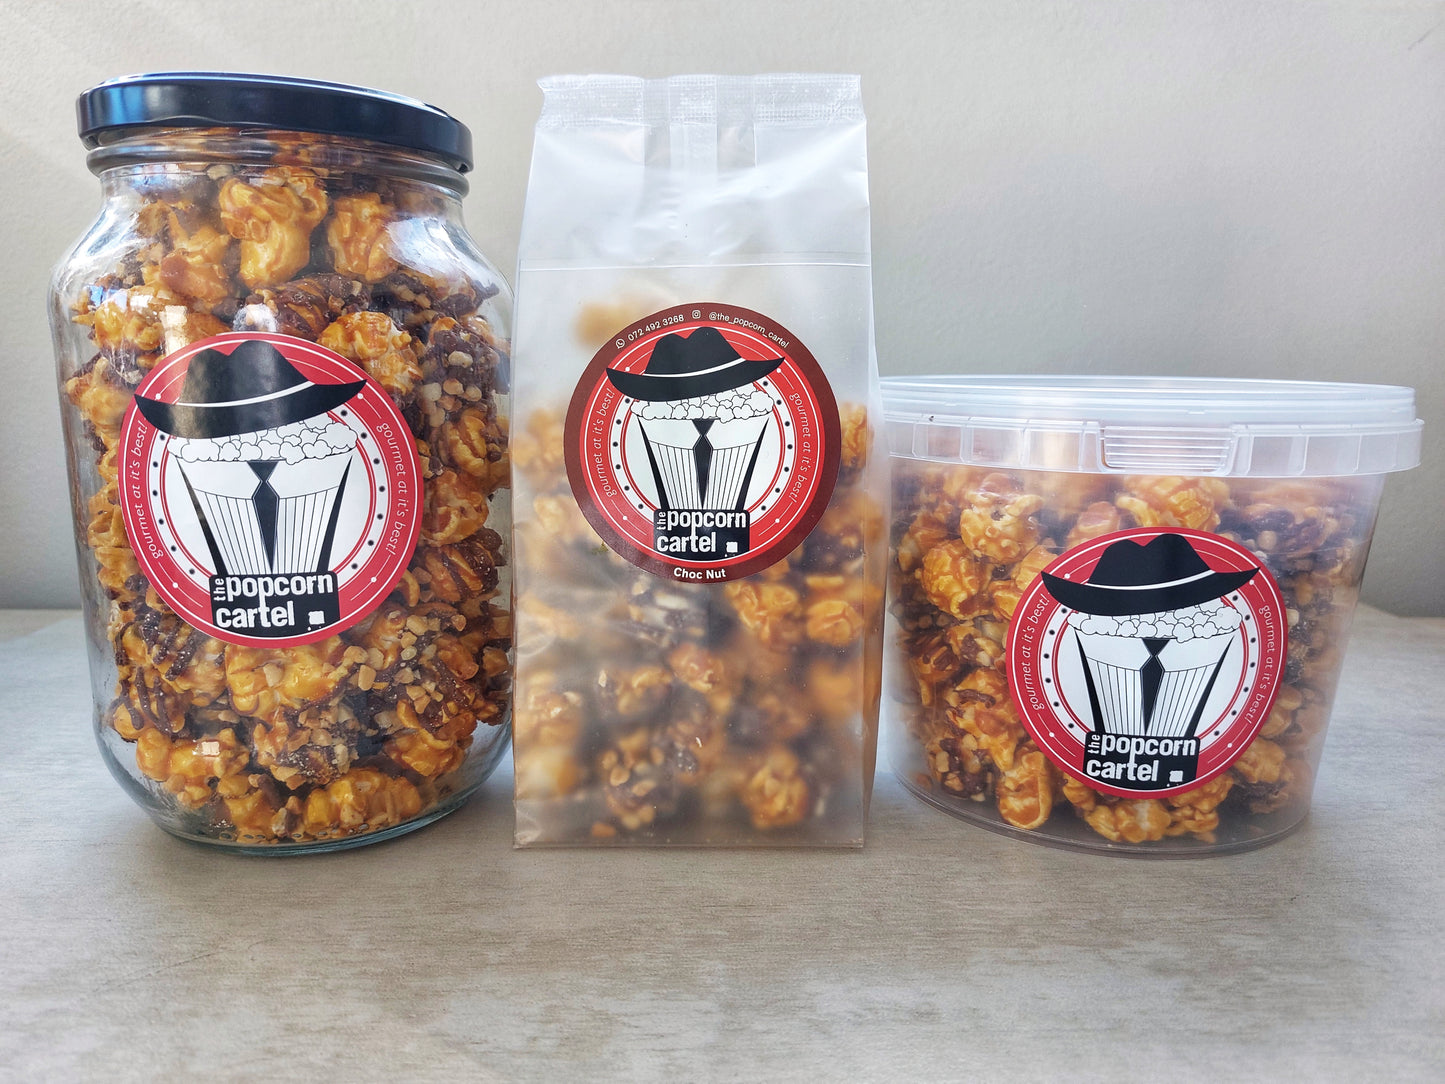 Speciality Popcorn - Choc Nut